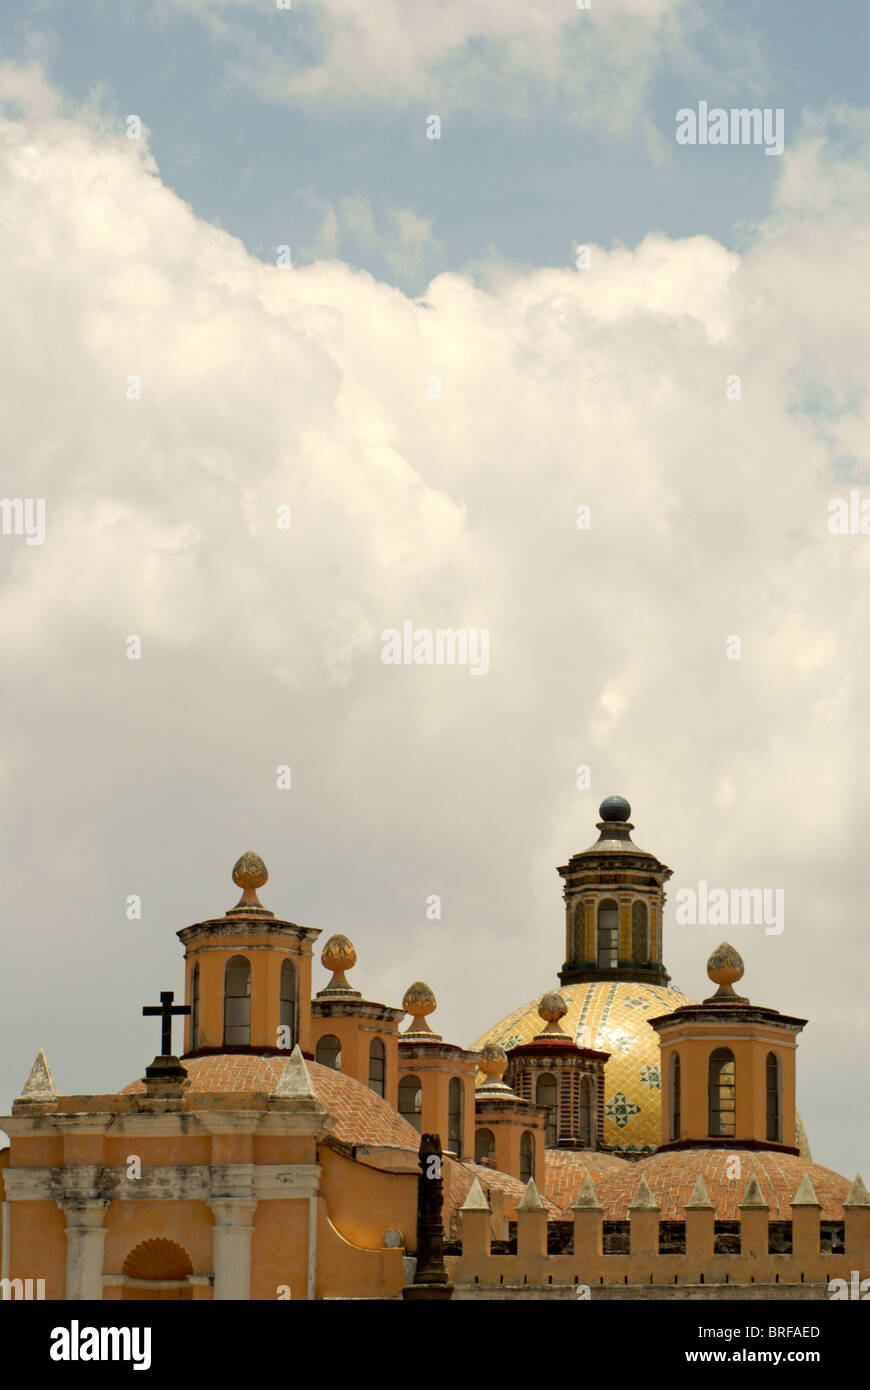 Le 16ème siècle dans la Capilla Real Ex-Convento de San Gabriel, Cholula, Mexique. Cholula est un UNESCO World Heritage Site. Banque D'Images